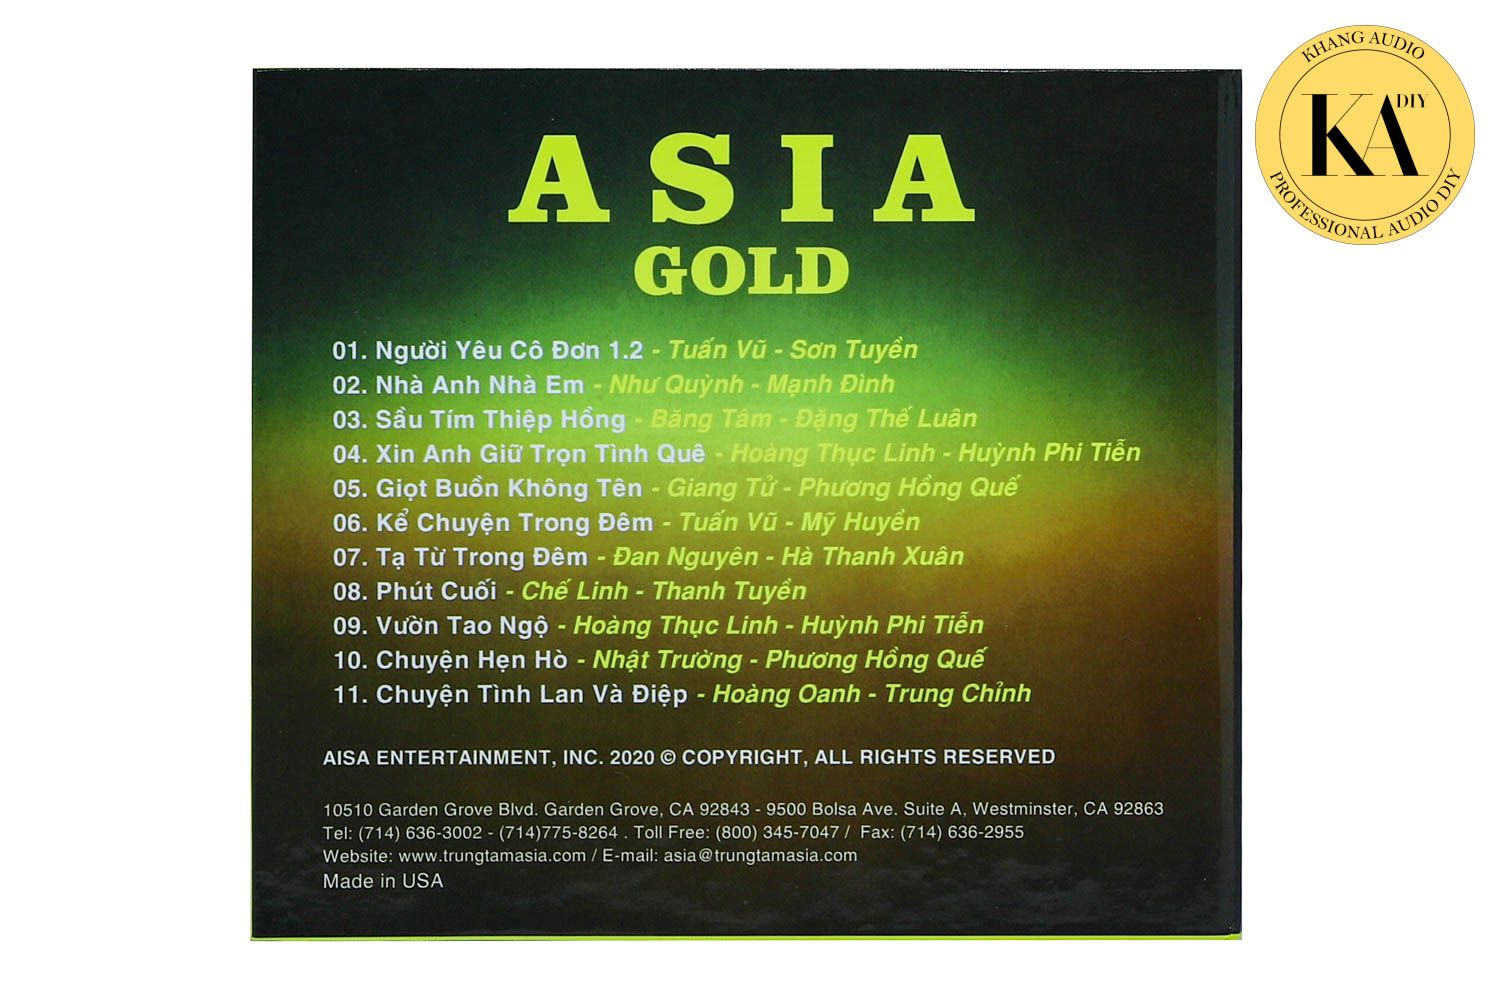 Nhạc Vàng Tuyển Chọn - ASIA GOLD Vol.5